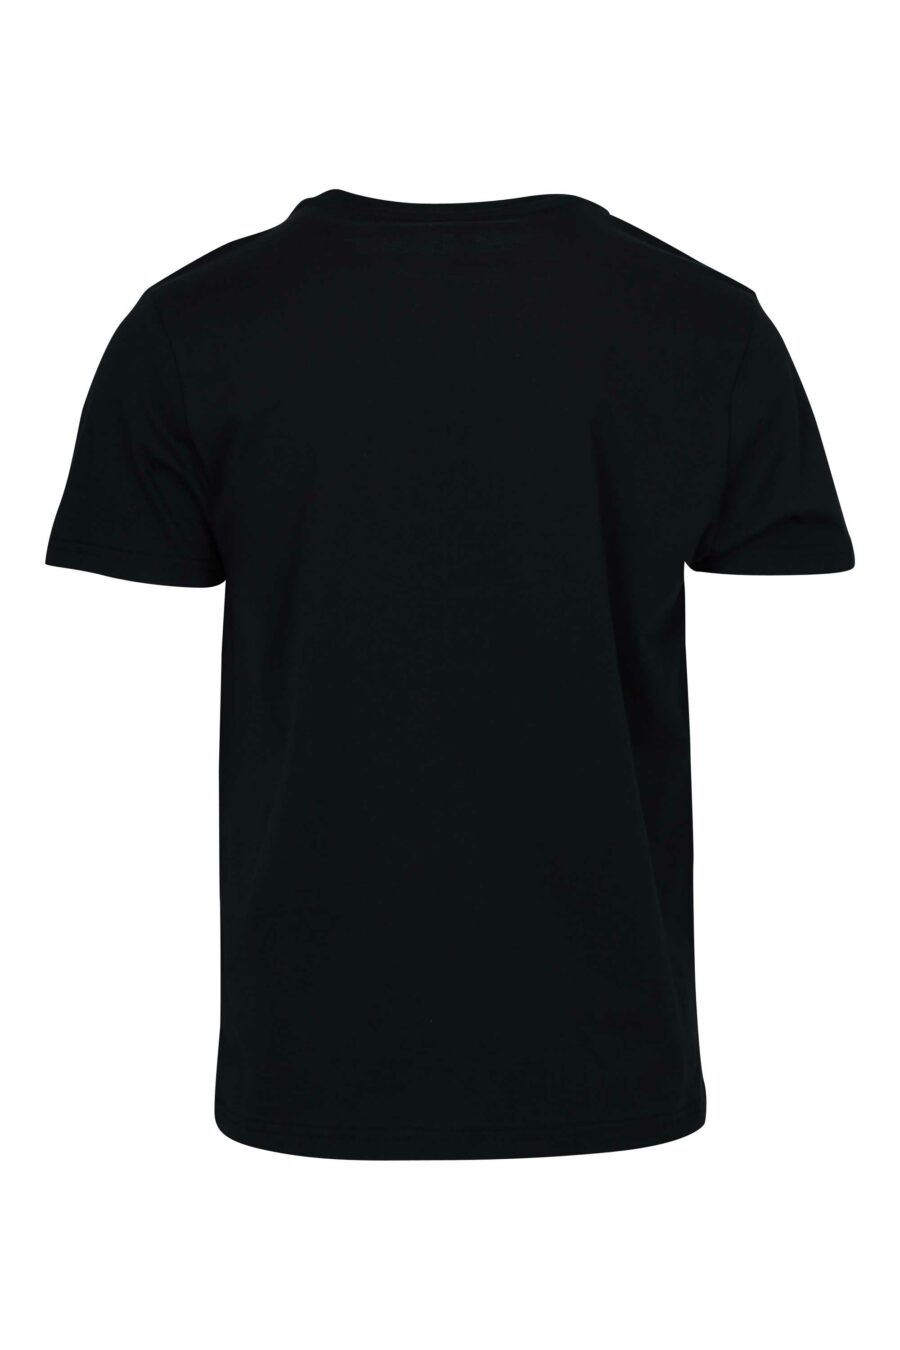 T-shirt noir avec logo en caoutchouc monochrome sur les épaules - 667113671994 1